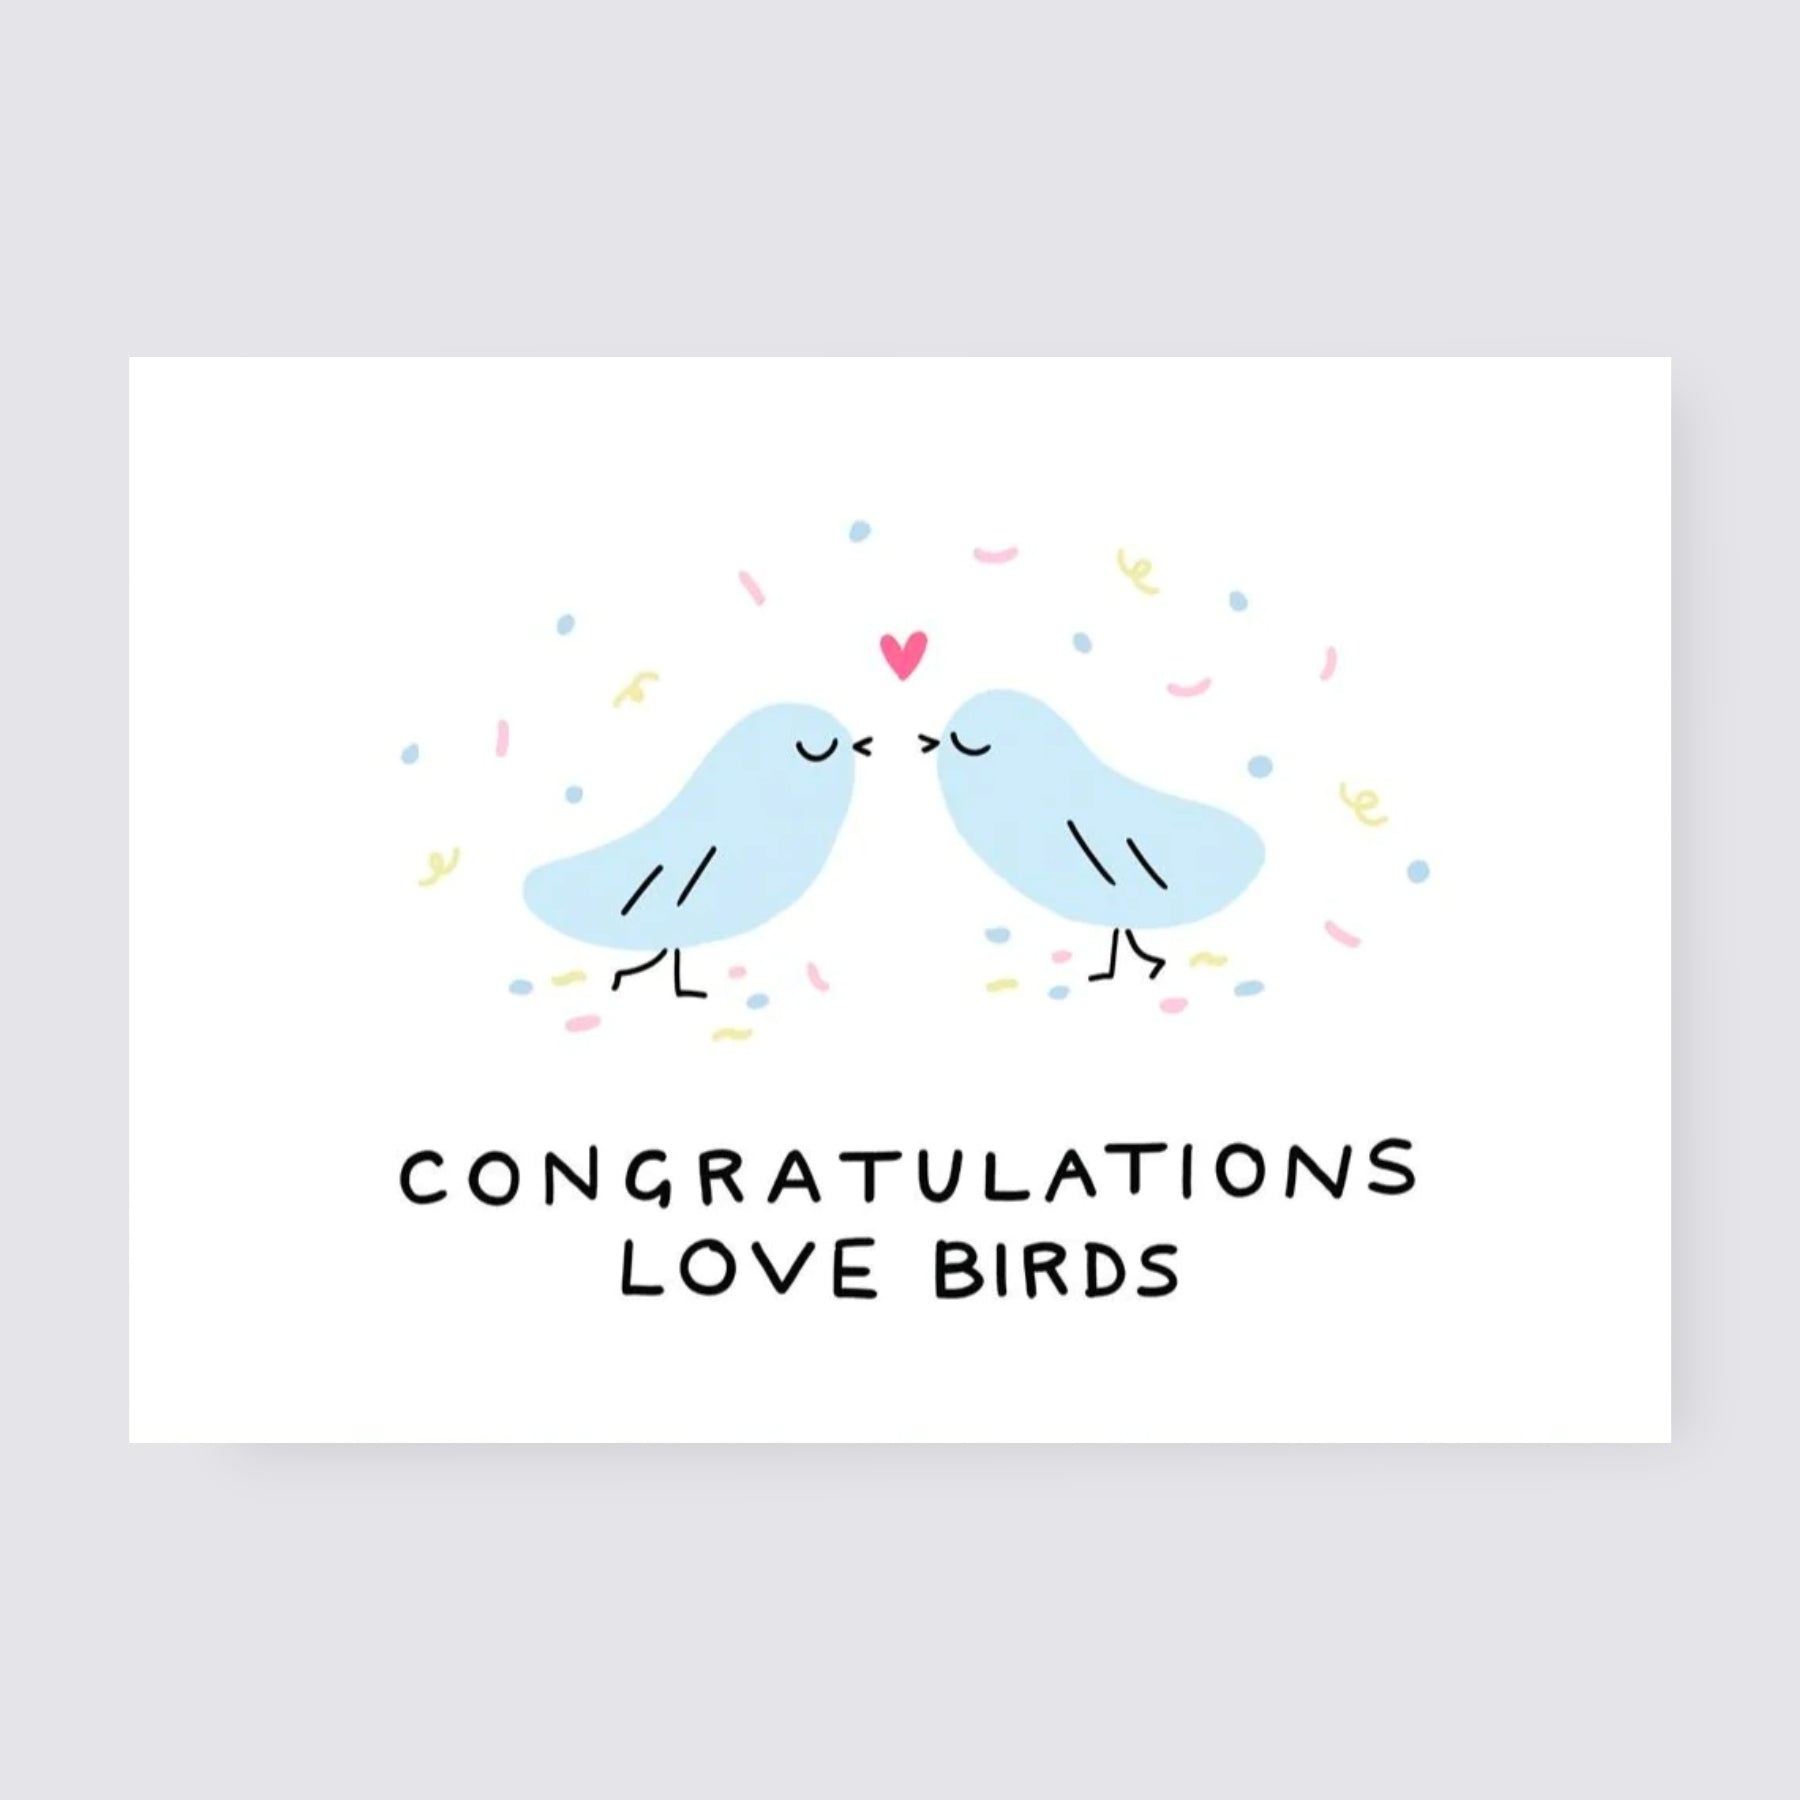 Congrats Love Birds Card